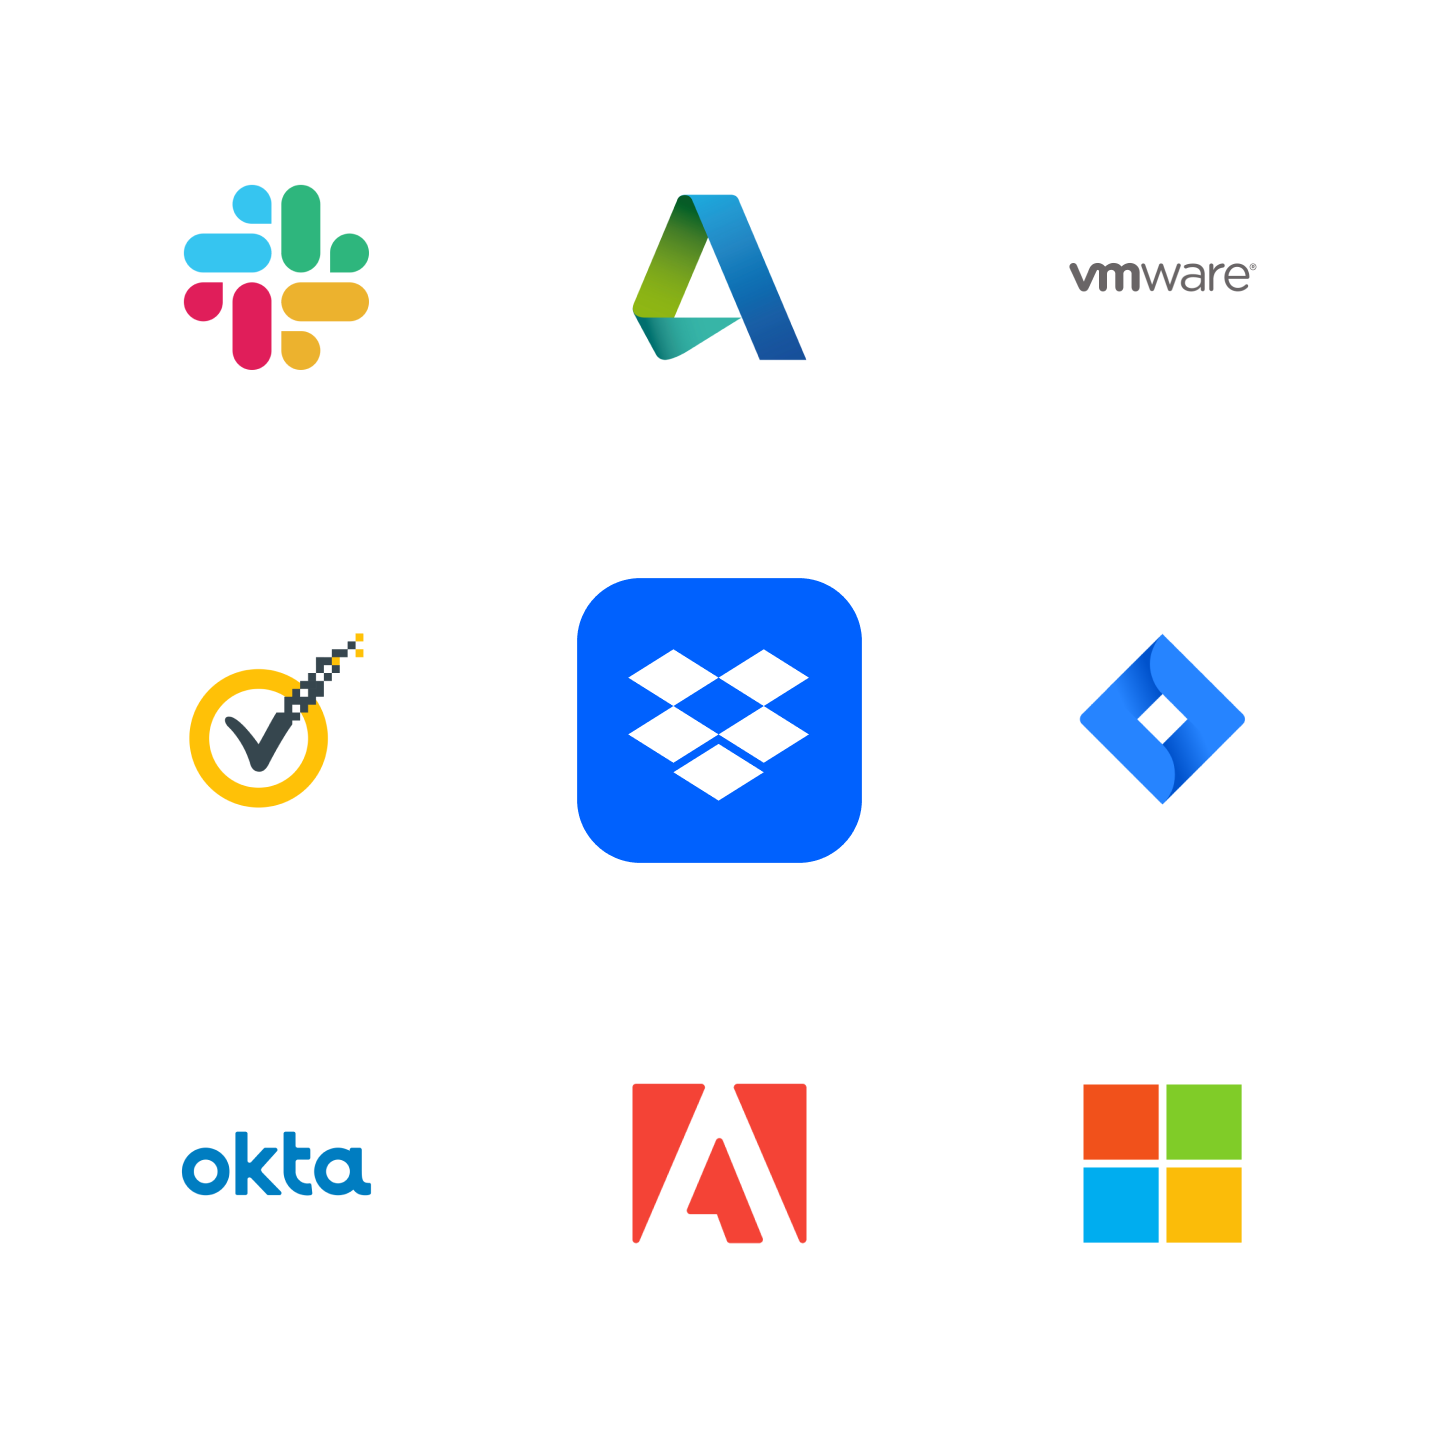  Iconos de empresas con las que se integra Dropbox